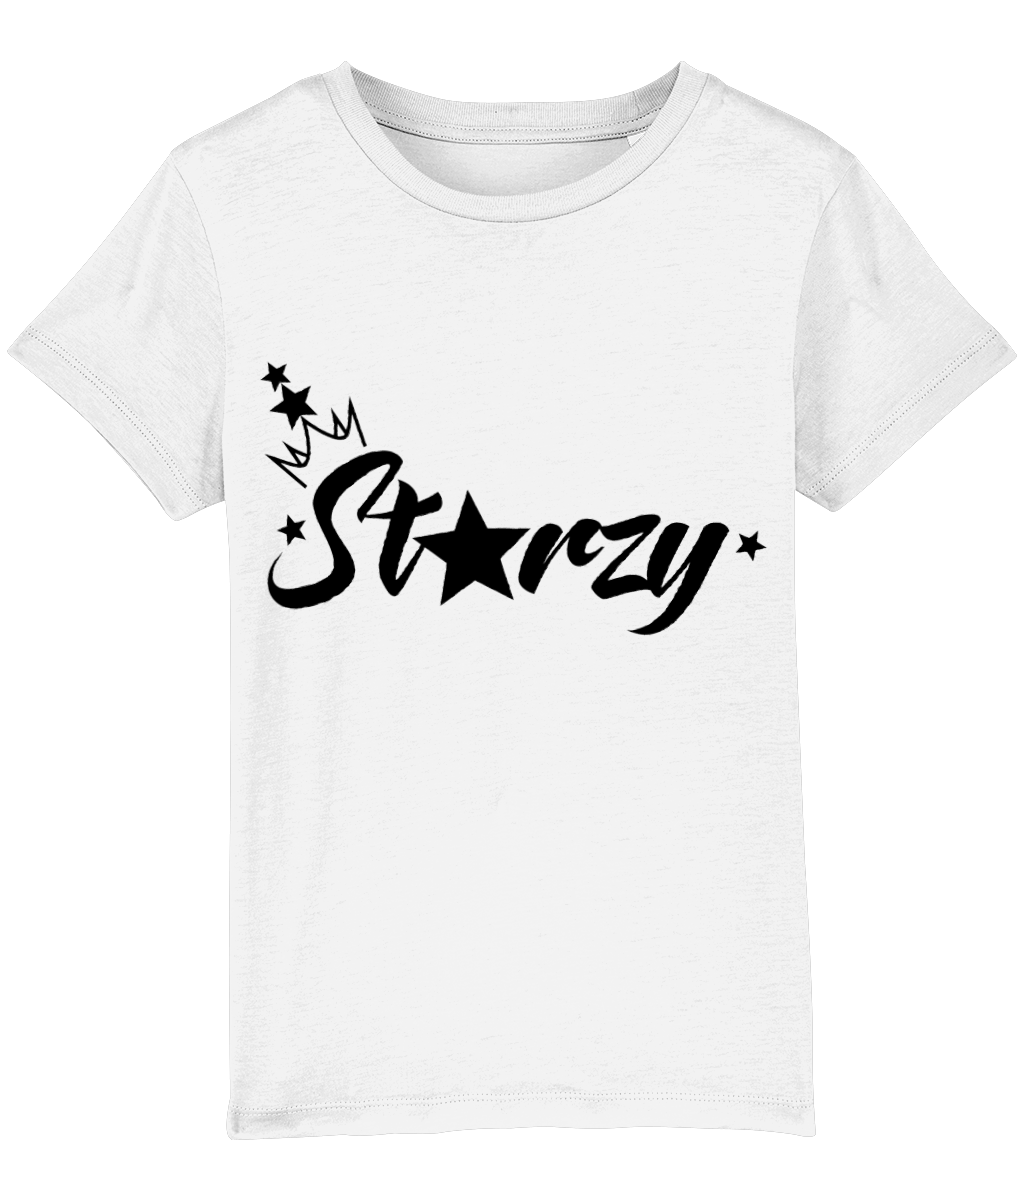 Anastarzia Anaquway - Starzy Black Logo Kids T-Shirt - SNATCHED MERCH